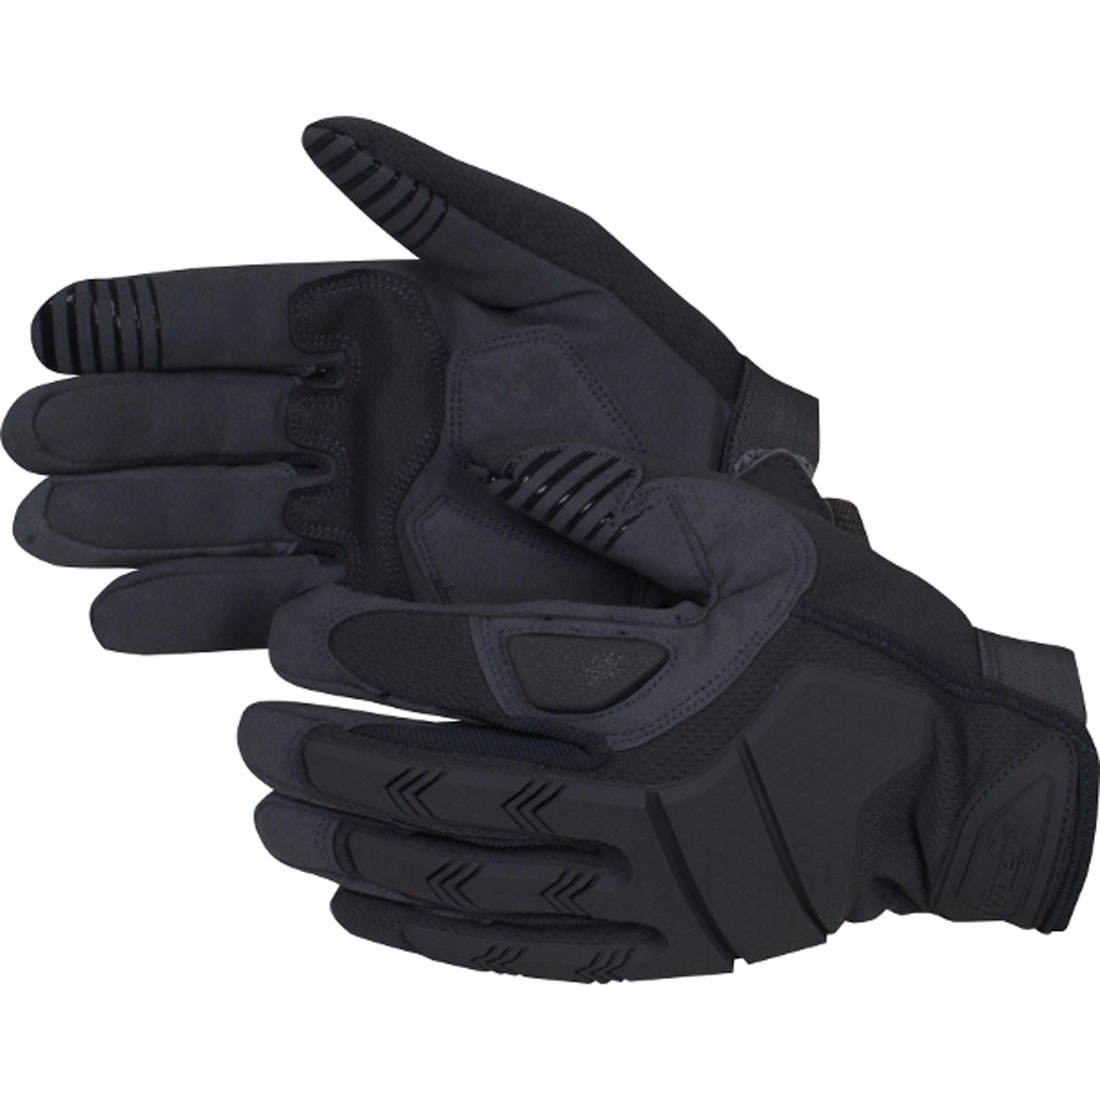 Viper Recon Gloves Black XL